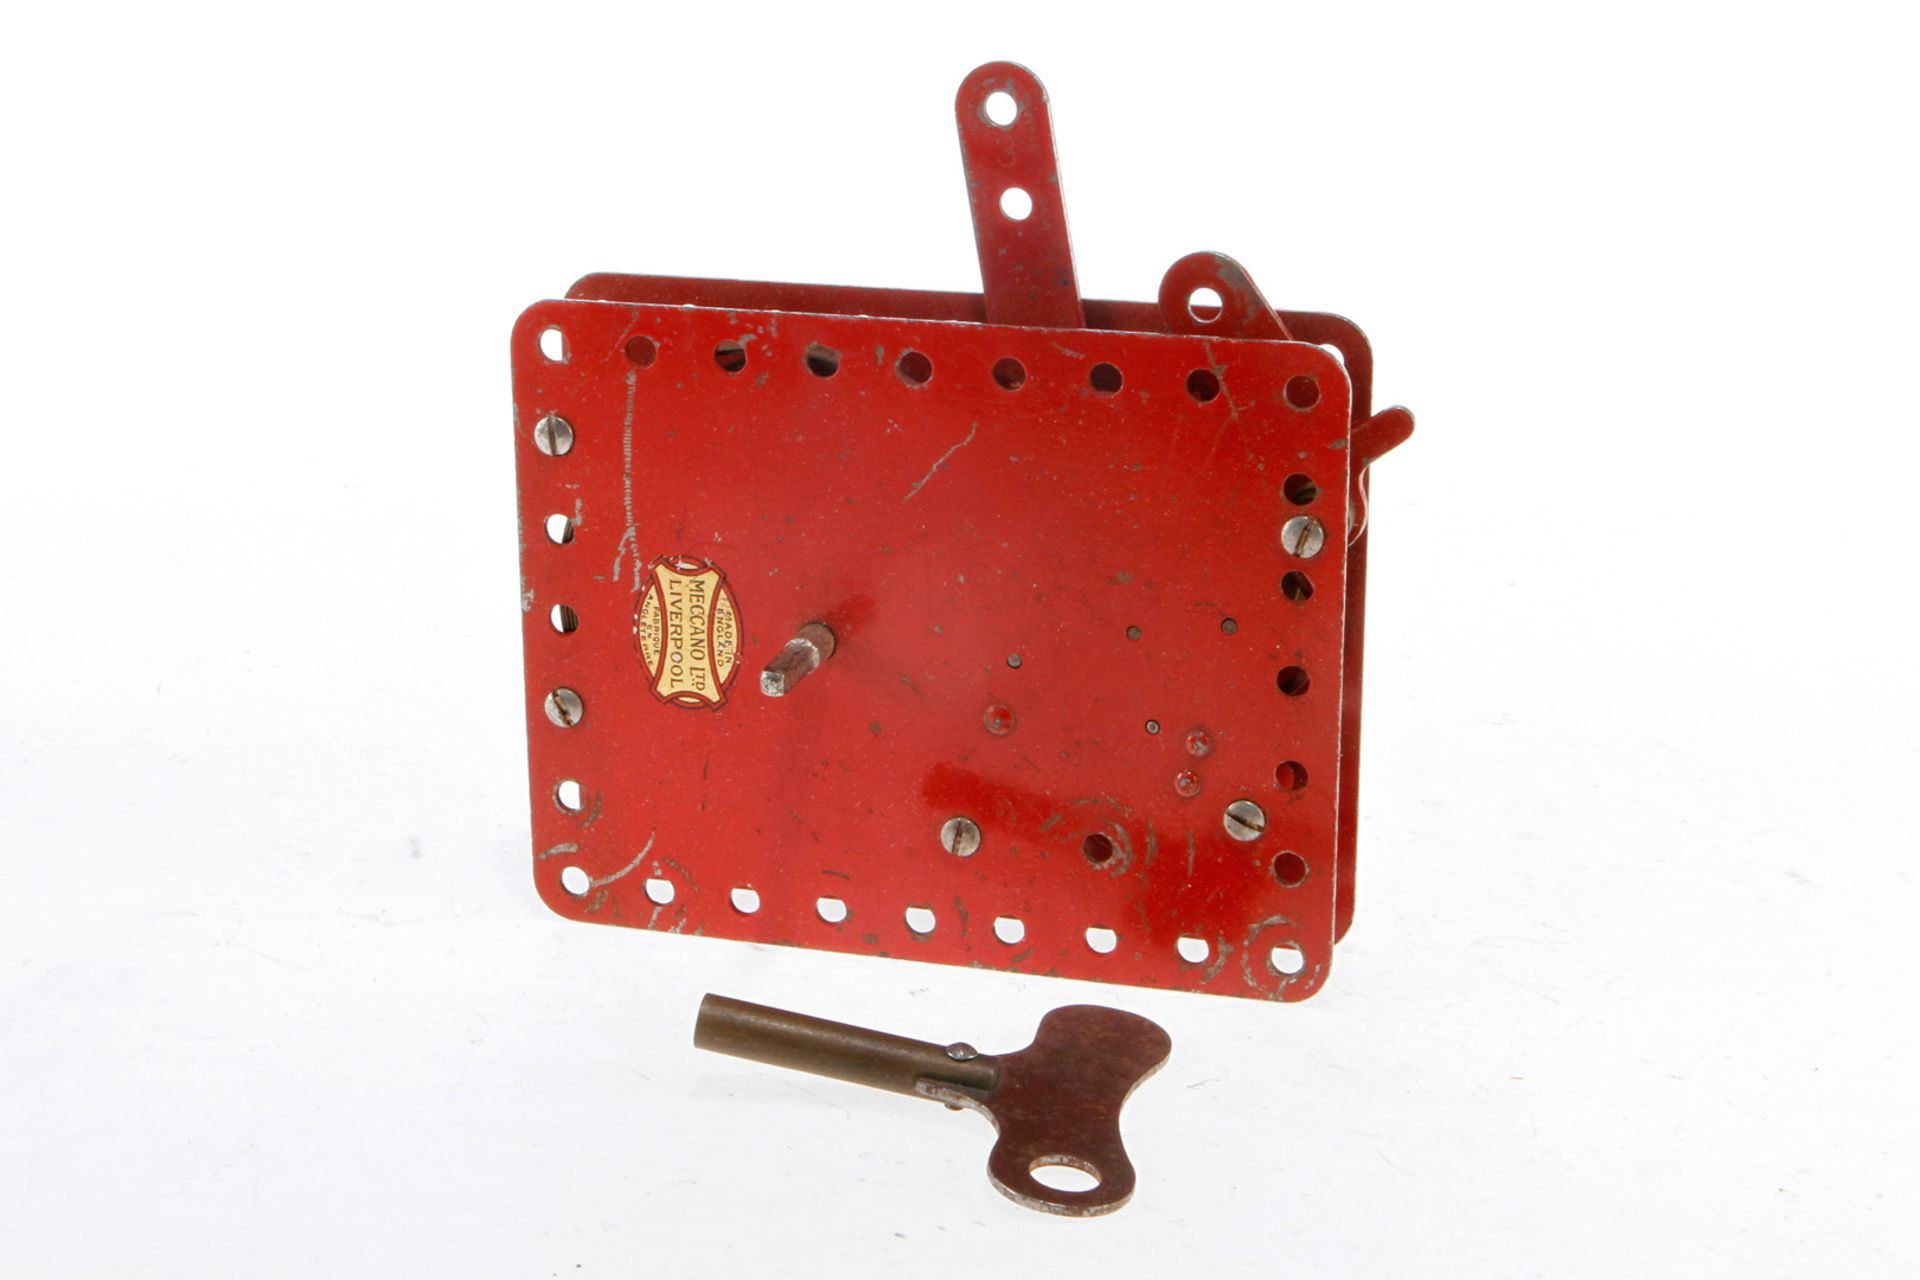 Meccano Uhrwerkmotor 1 A, intakt, rot, mit Schlüssel, Lackschäden, H 11,5, Originalkarton, Z 3